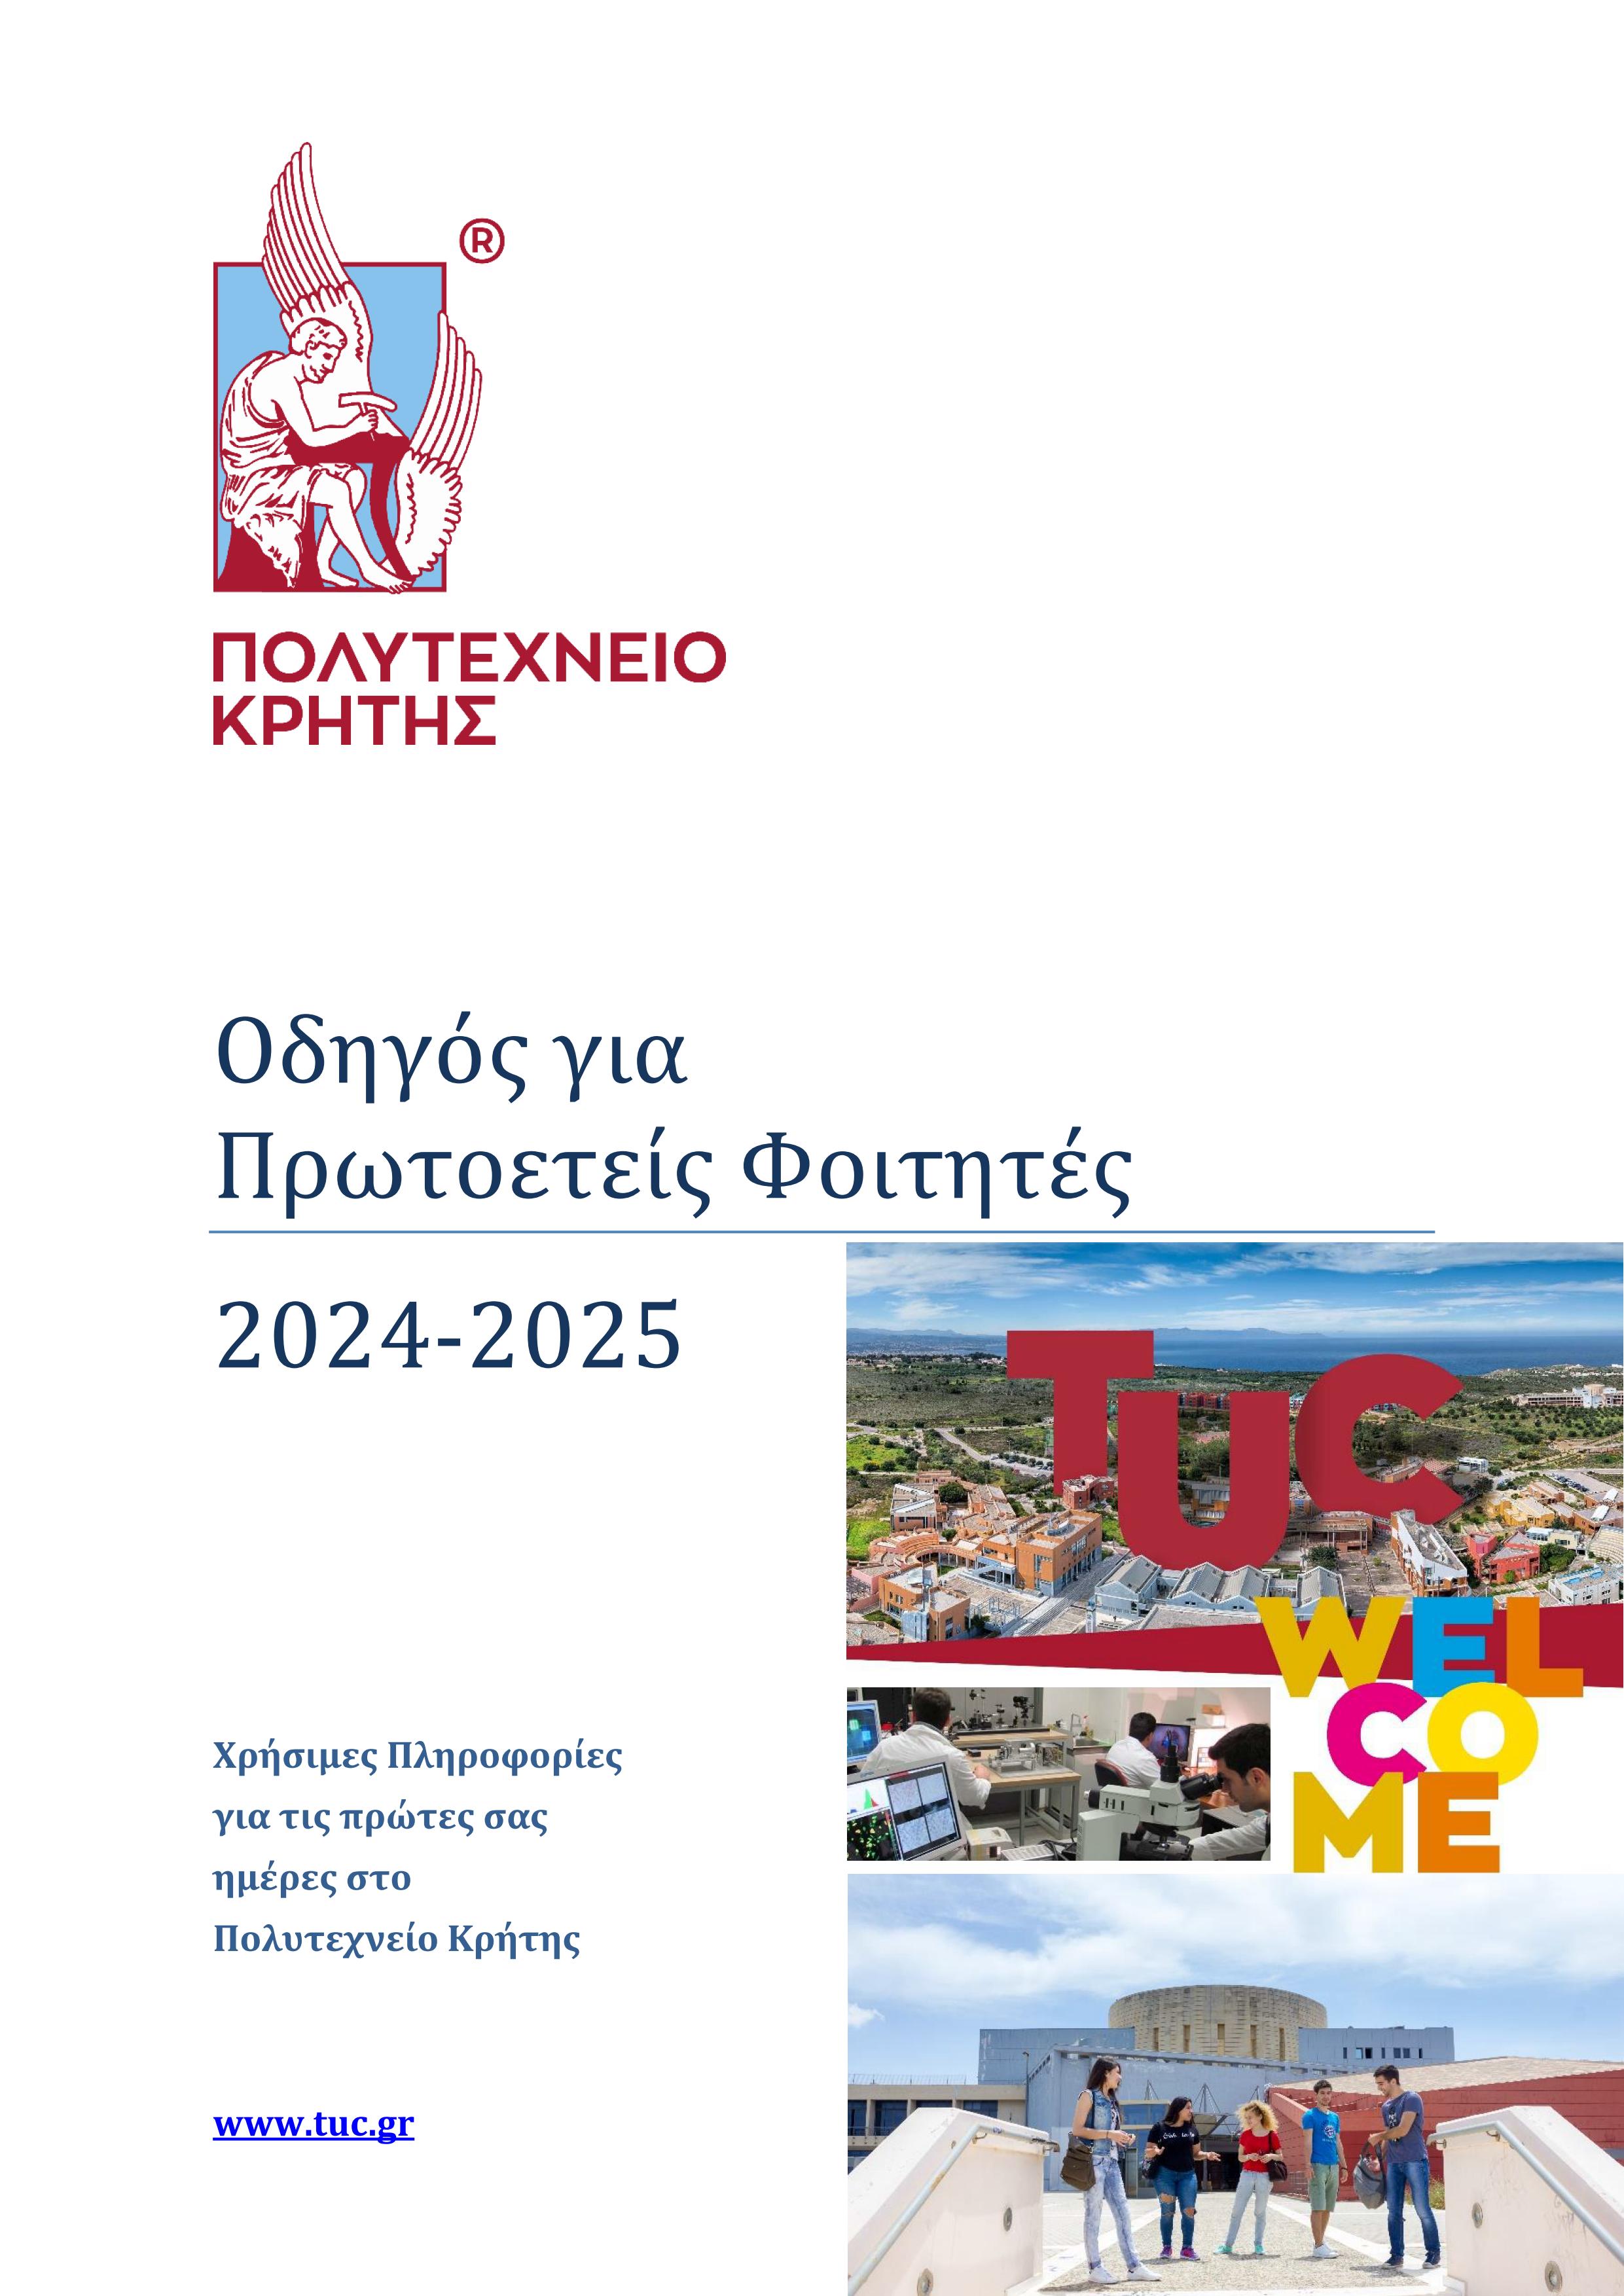 Οδηγός Πρωτοετών Φοιτητών Πολυτεχνείου Κρήτης 2024-2025